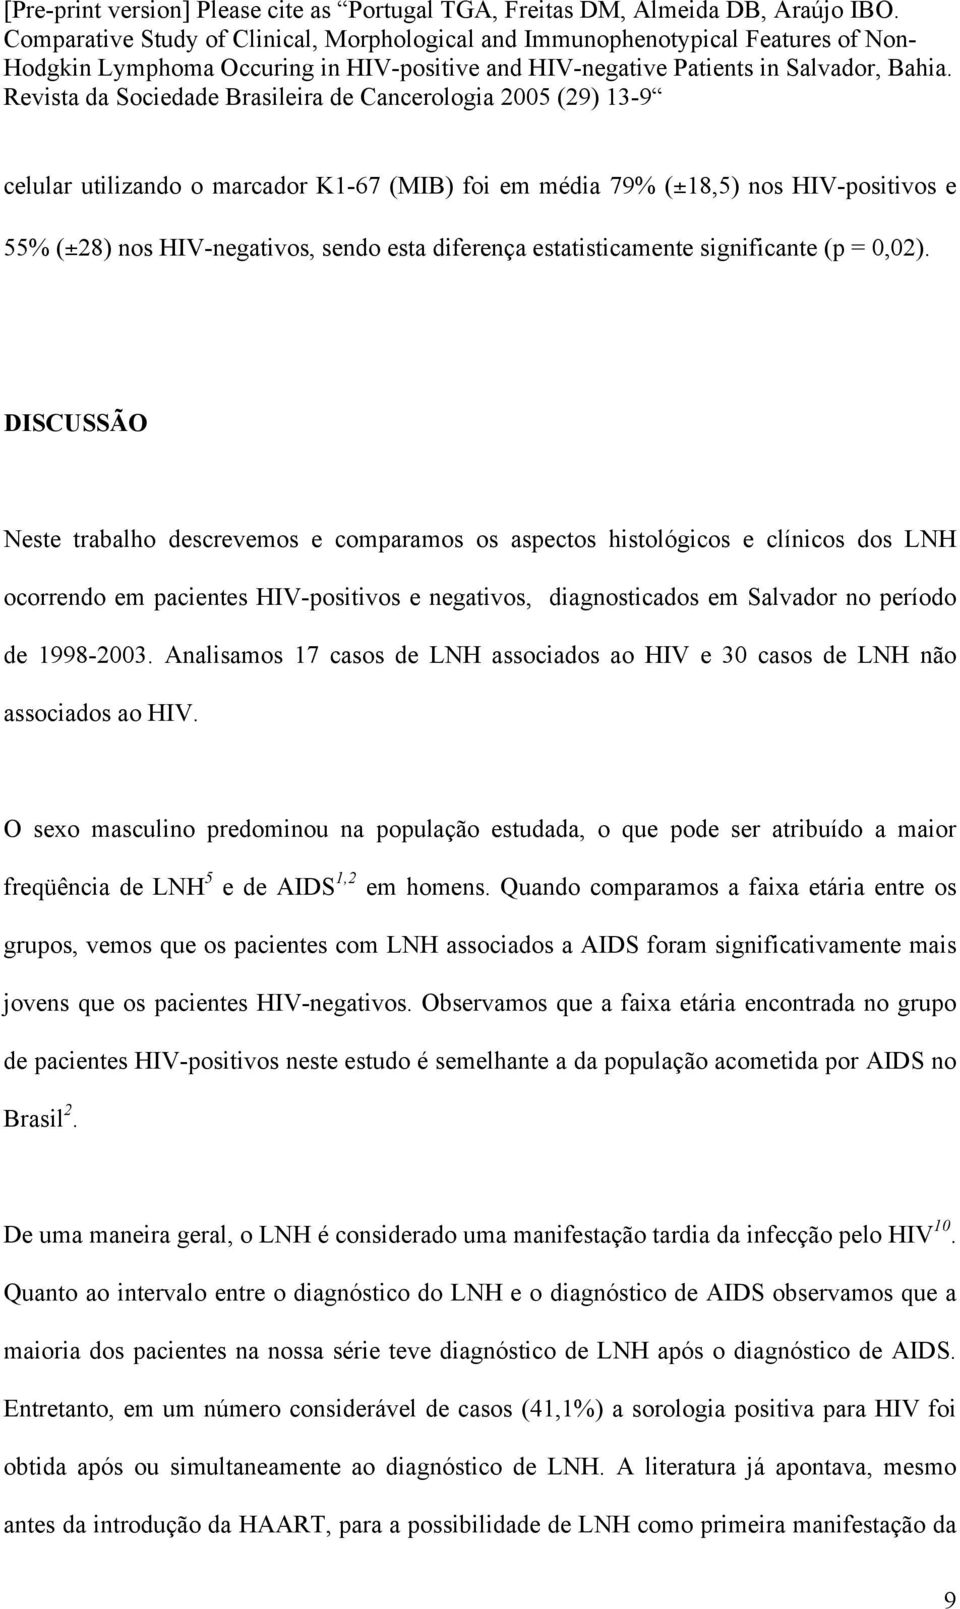 Analisamos 17 casos de LNH associados ao HIV e 30 casos de LNH não associados ao HIV.